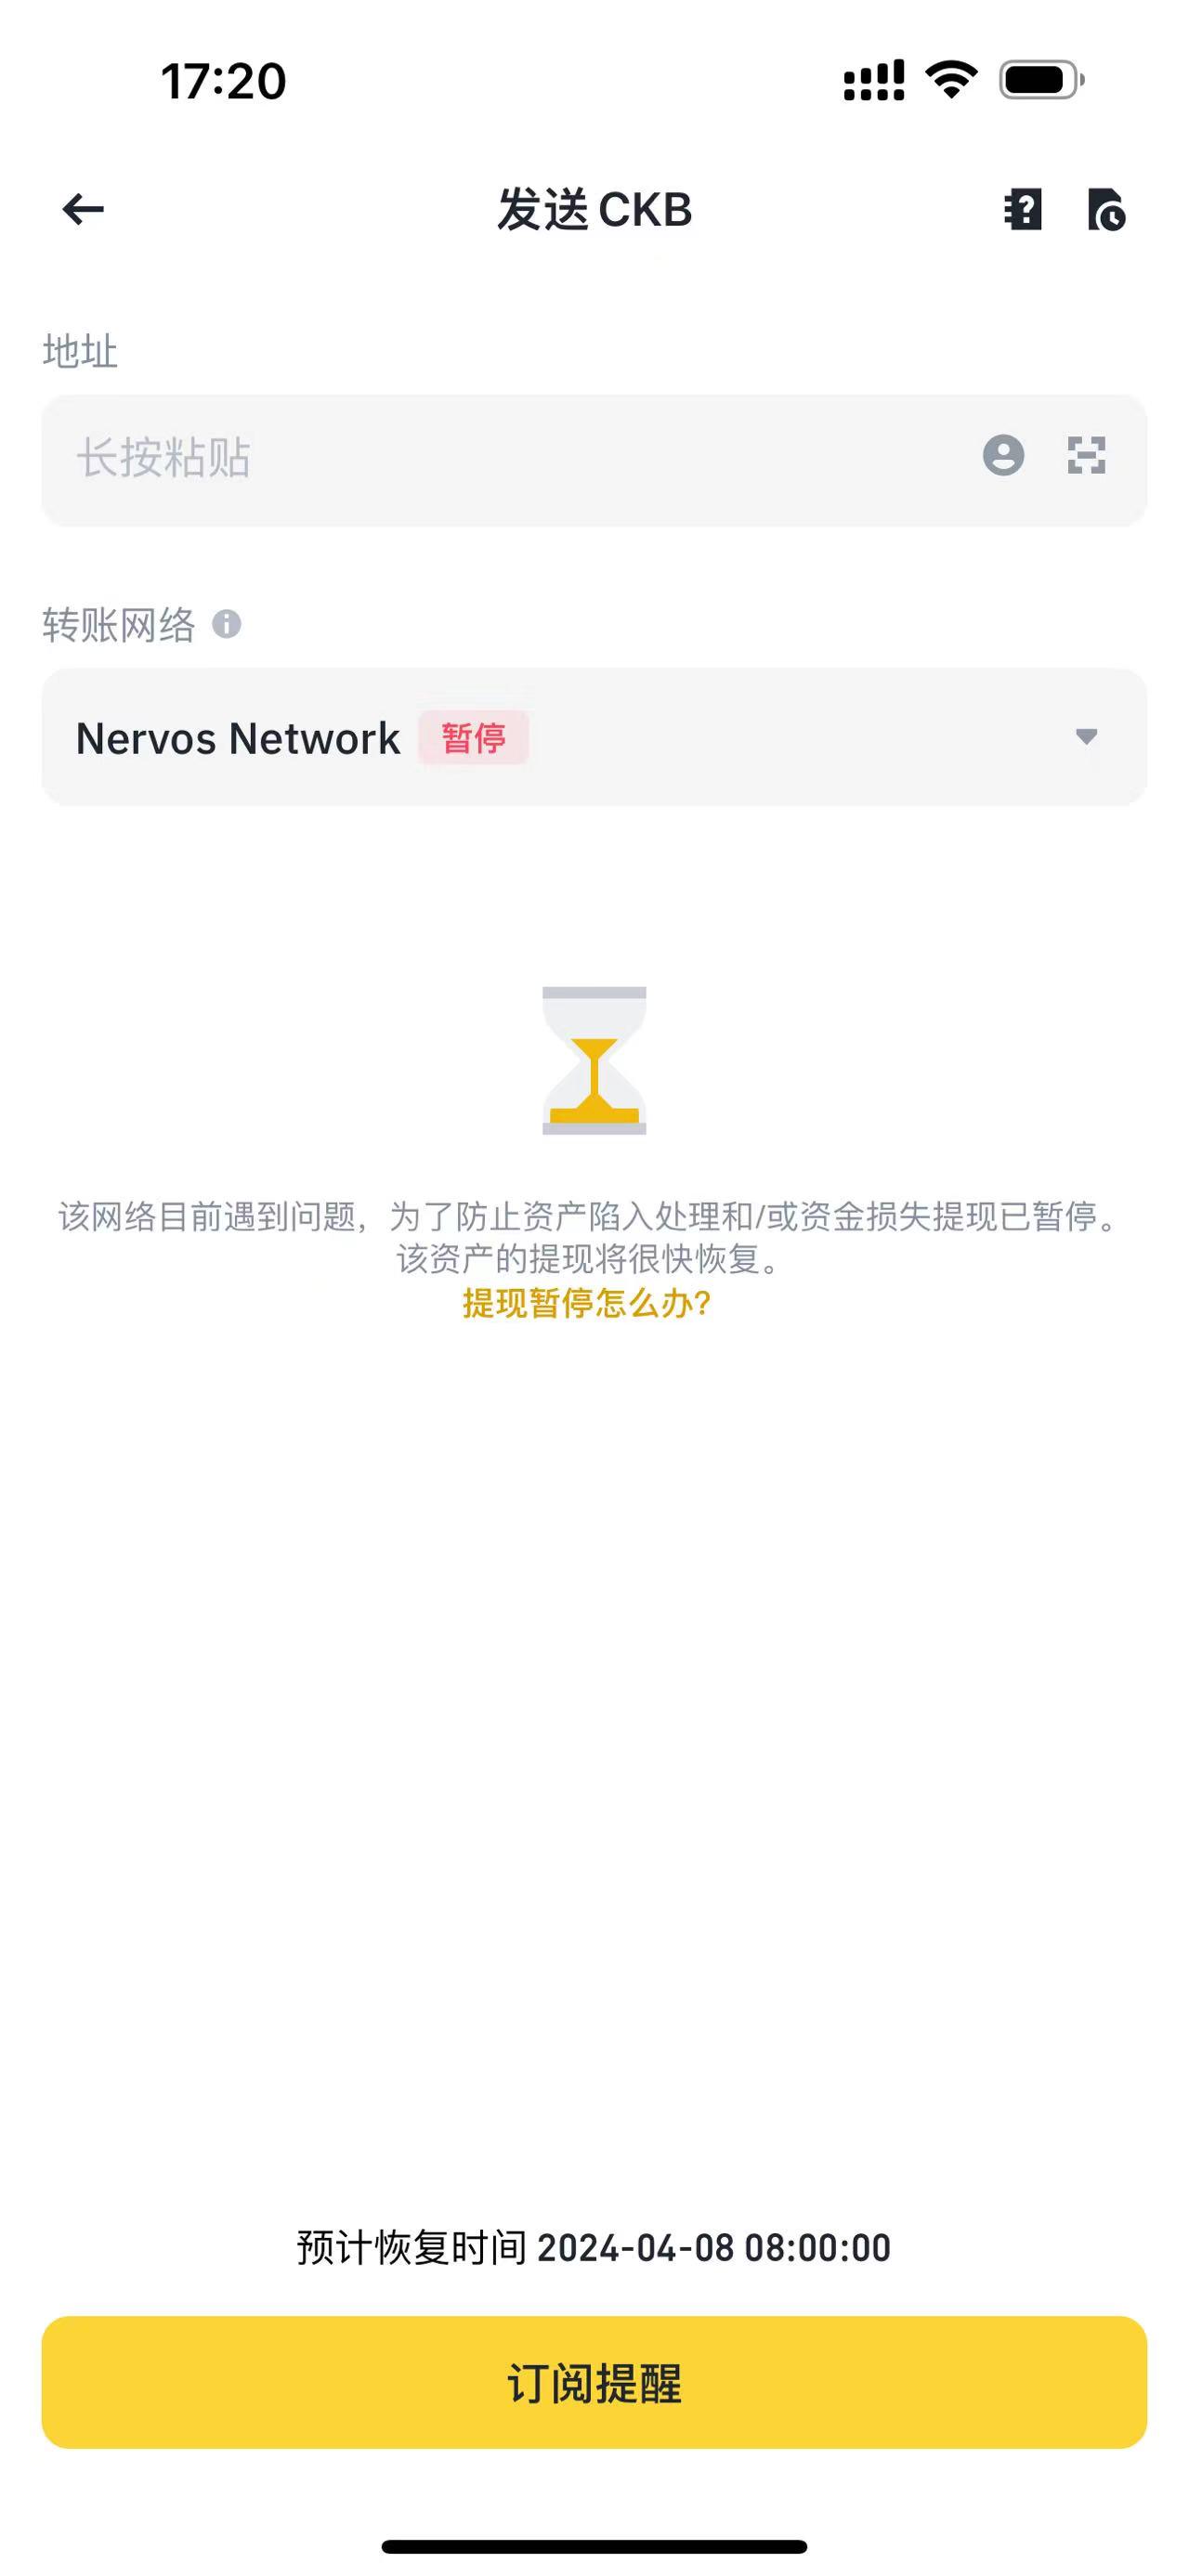 币安已暂停CKB在Nervos Network上的提现服务